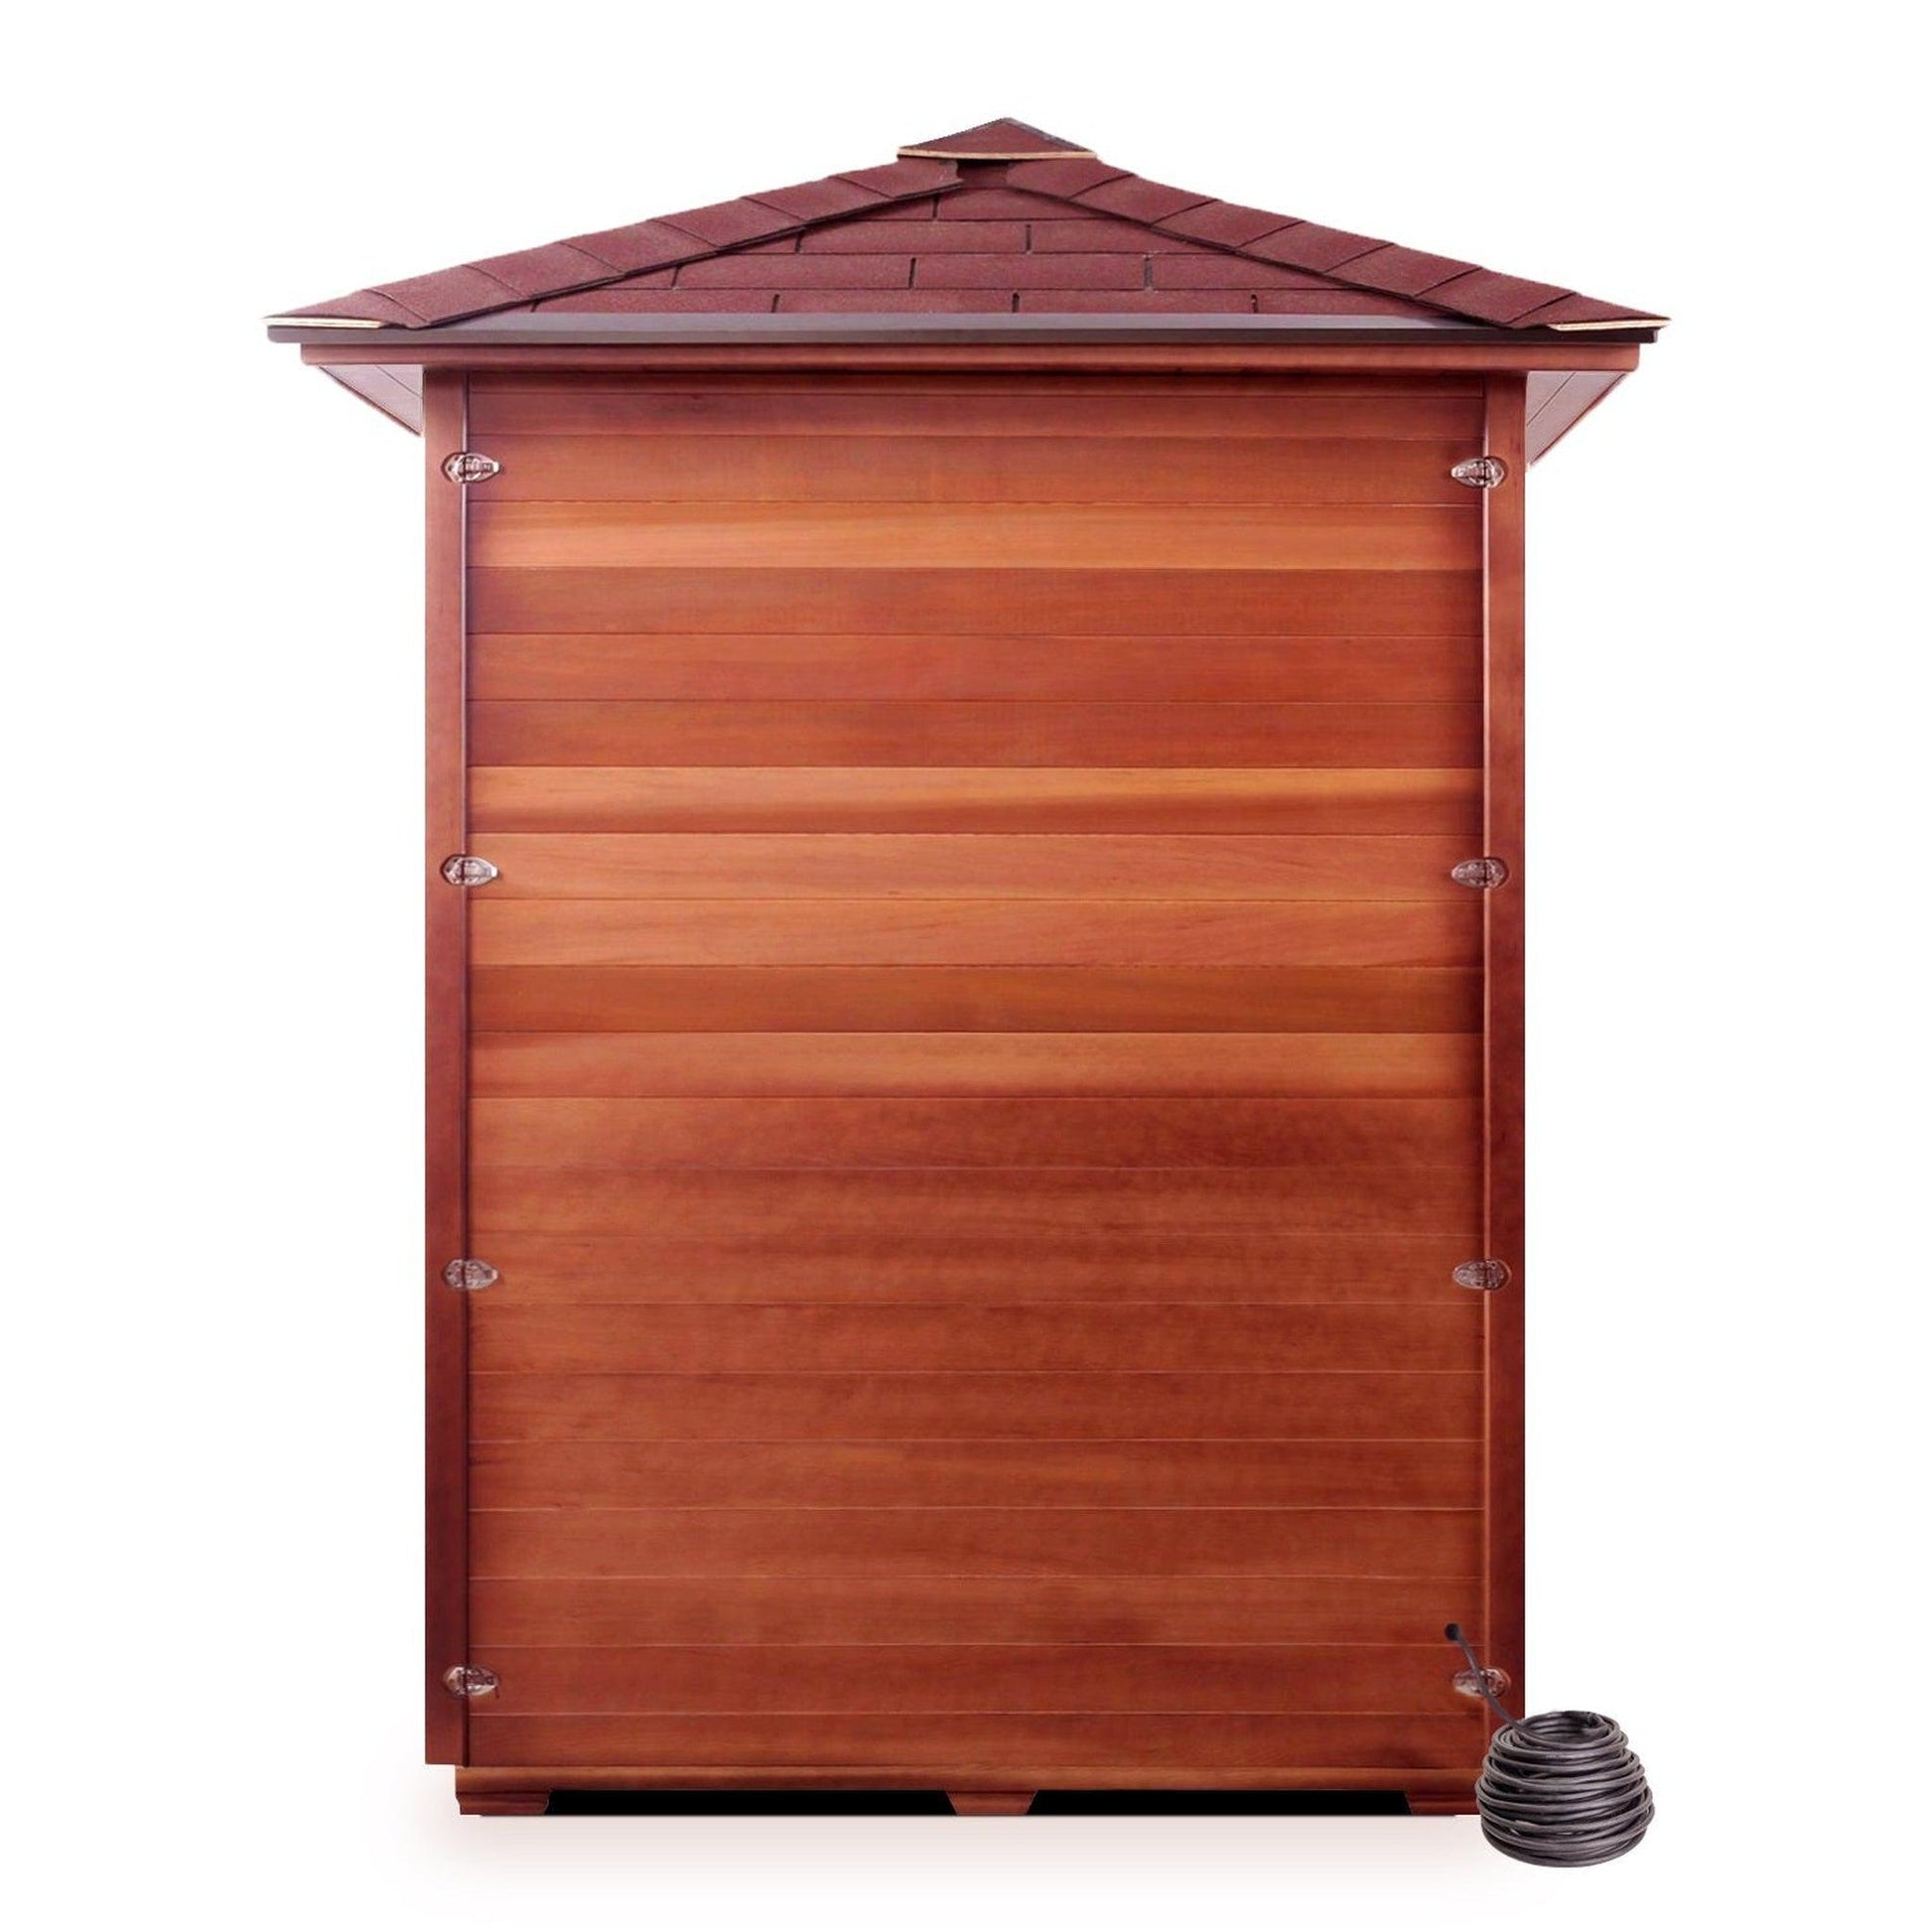 Enlighten SaunaTerra MoonLight 3-Person Peak Roof Dry Traditional Outdoor Sauna